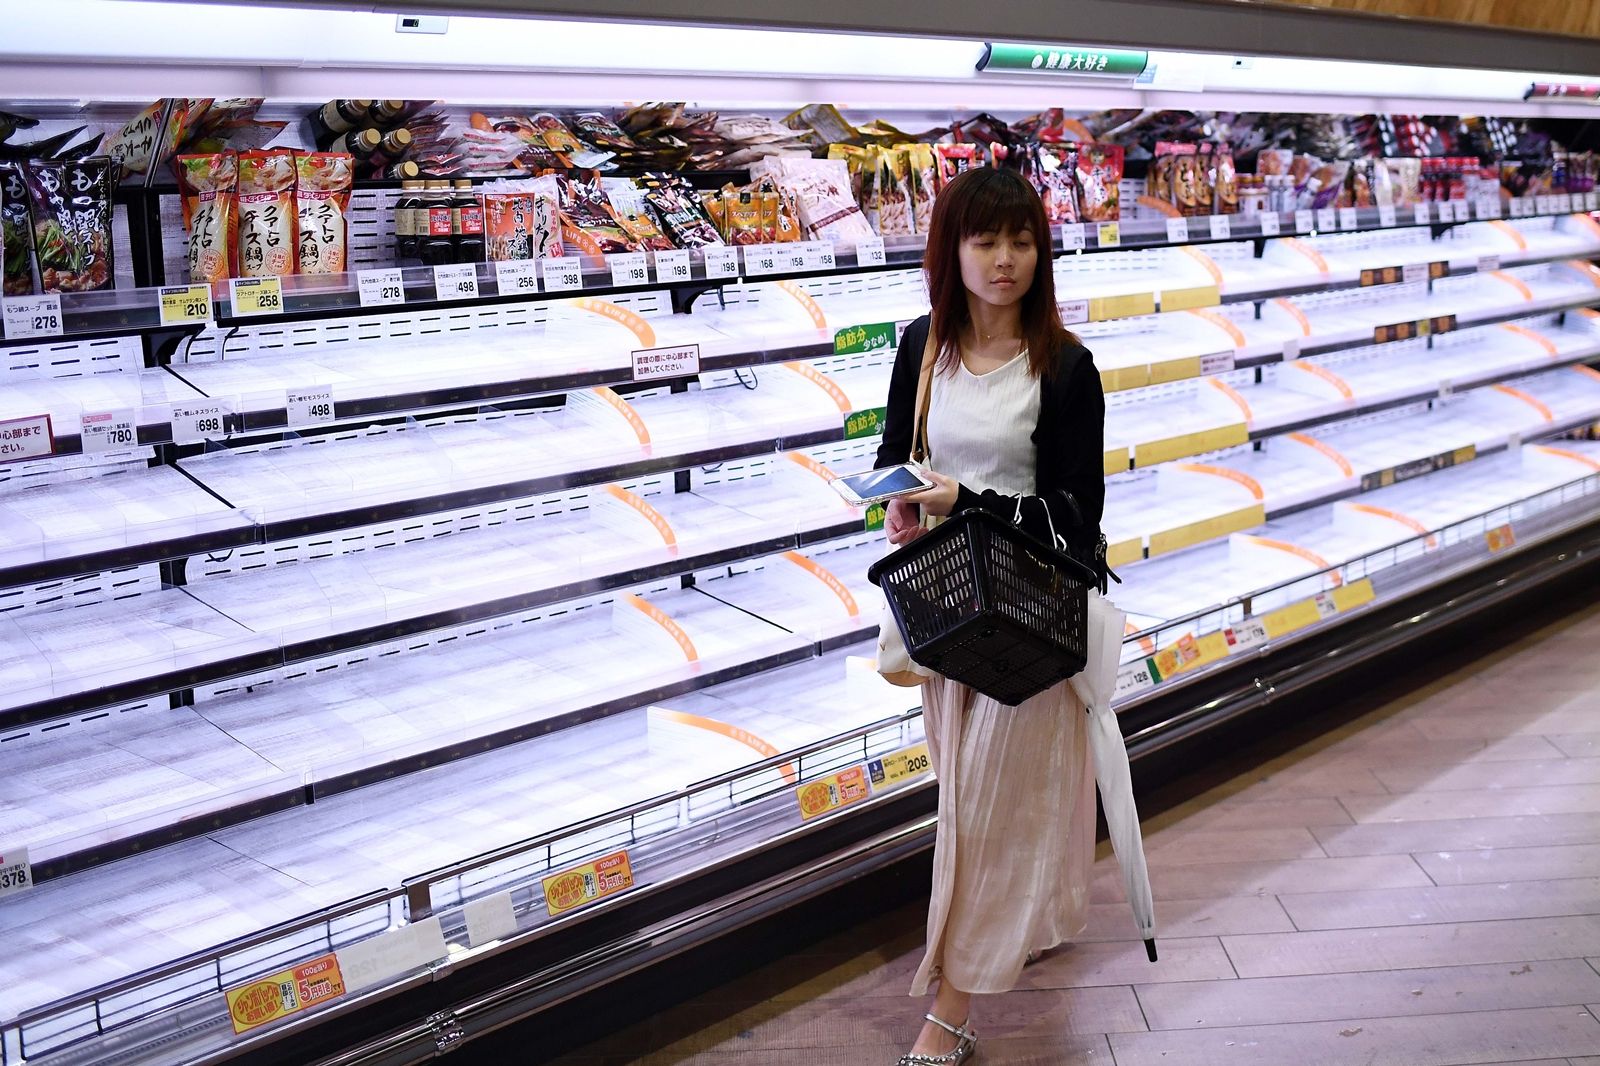 คนญี่ปุ่นกักตุนสินค้าก่อนพายุไต้ฝุ่นฮากิบิสซัดขึ้นฝั่งจนเชลฟ์วางของในห้างสรรพสินค้าโล่ง